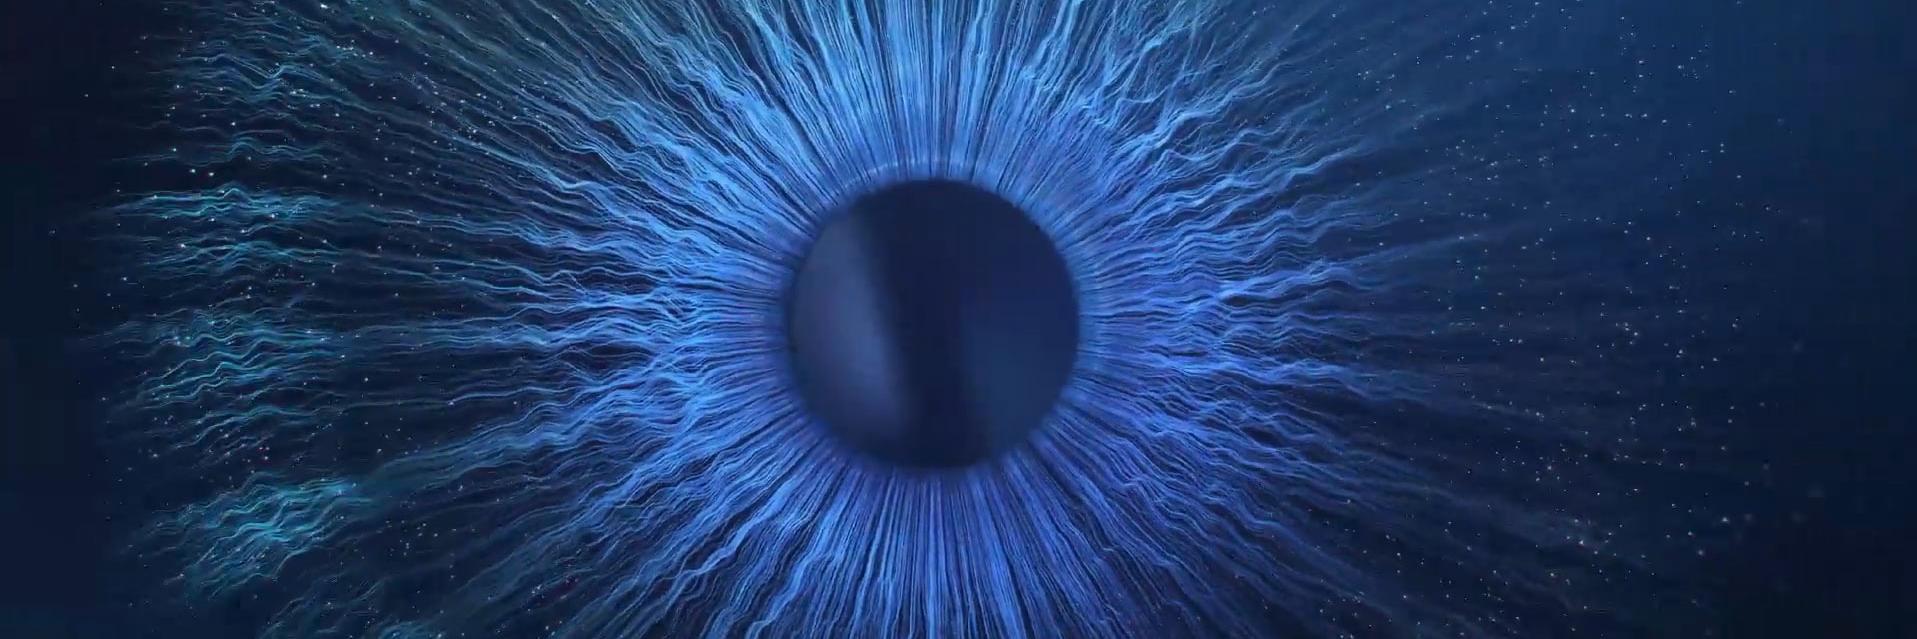 挑戰想像的極限影像——黑暗中的湛藍色的眼球特寫。